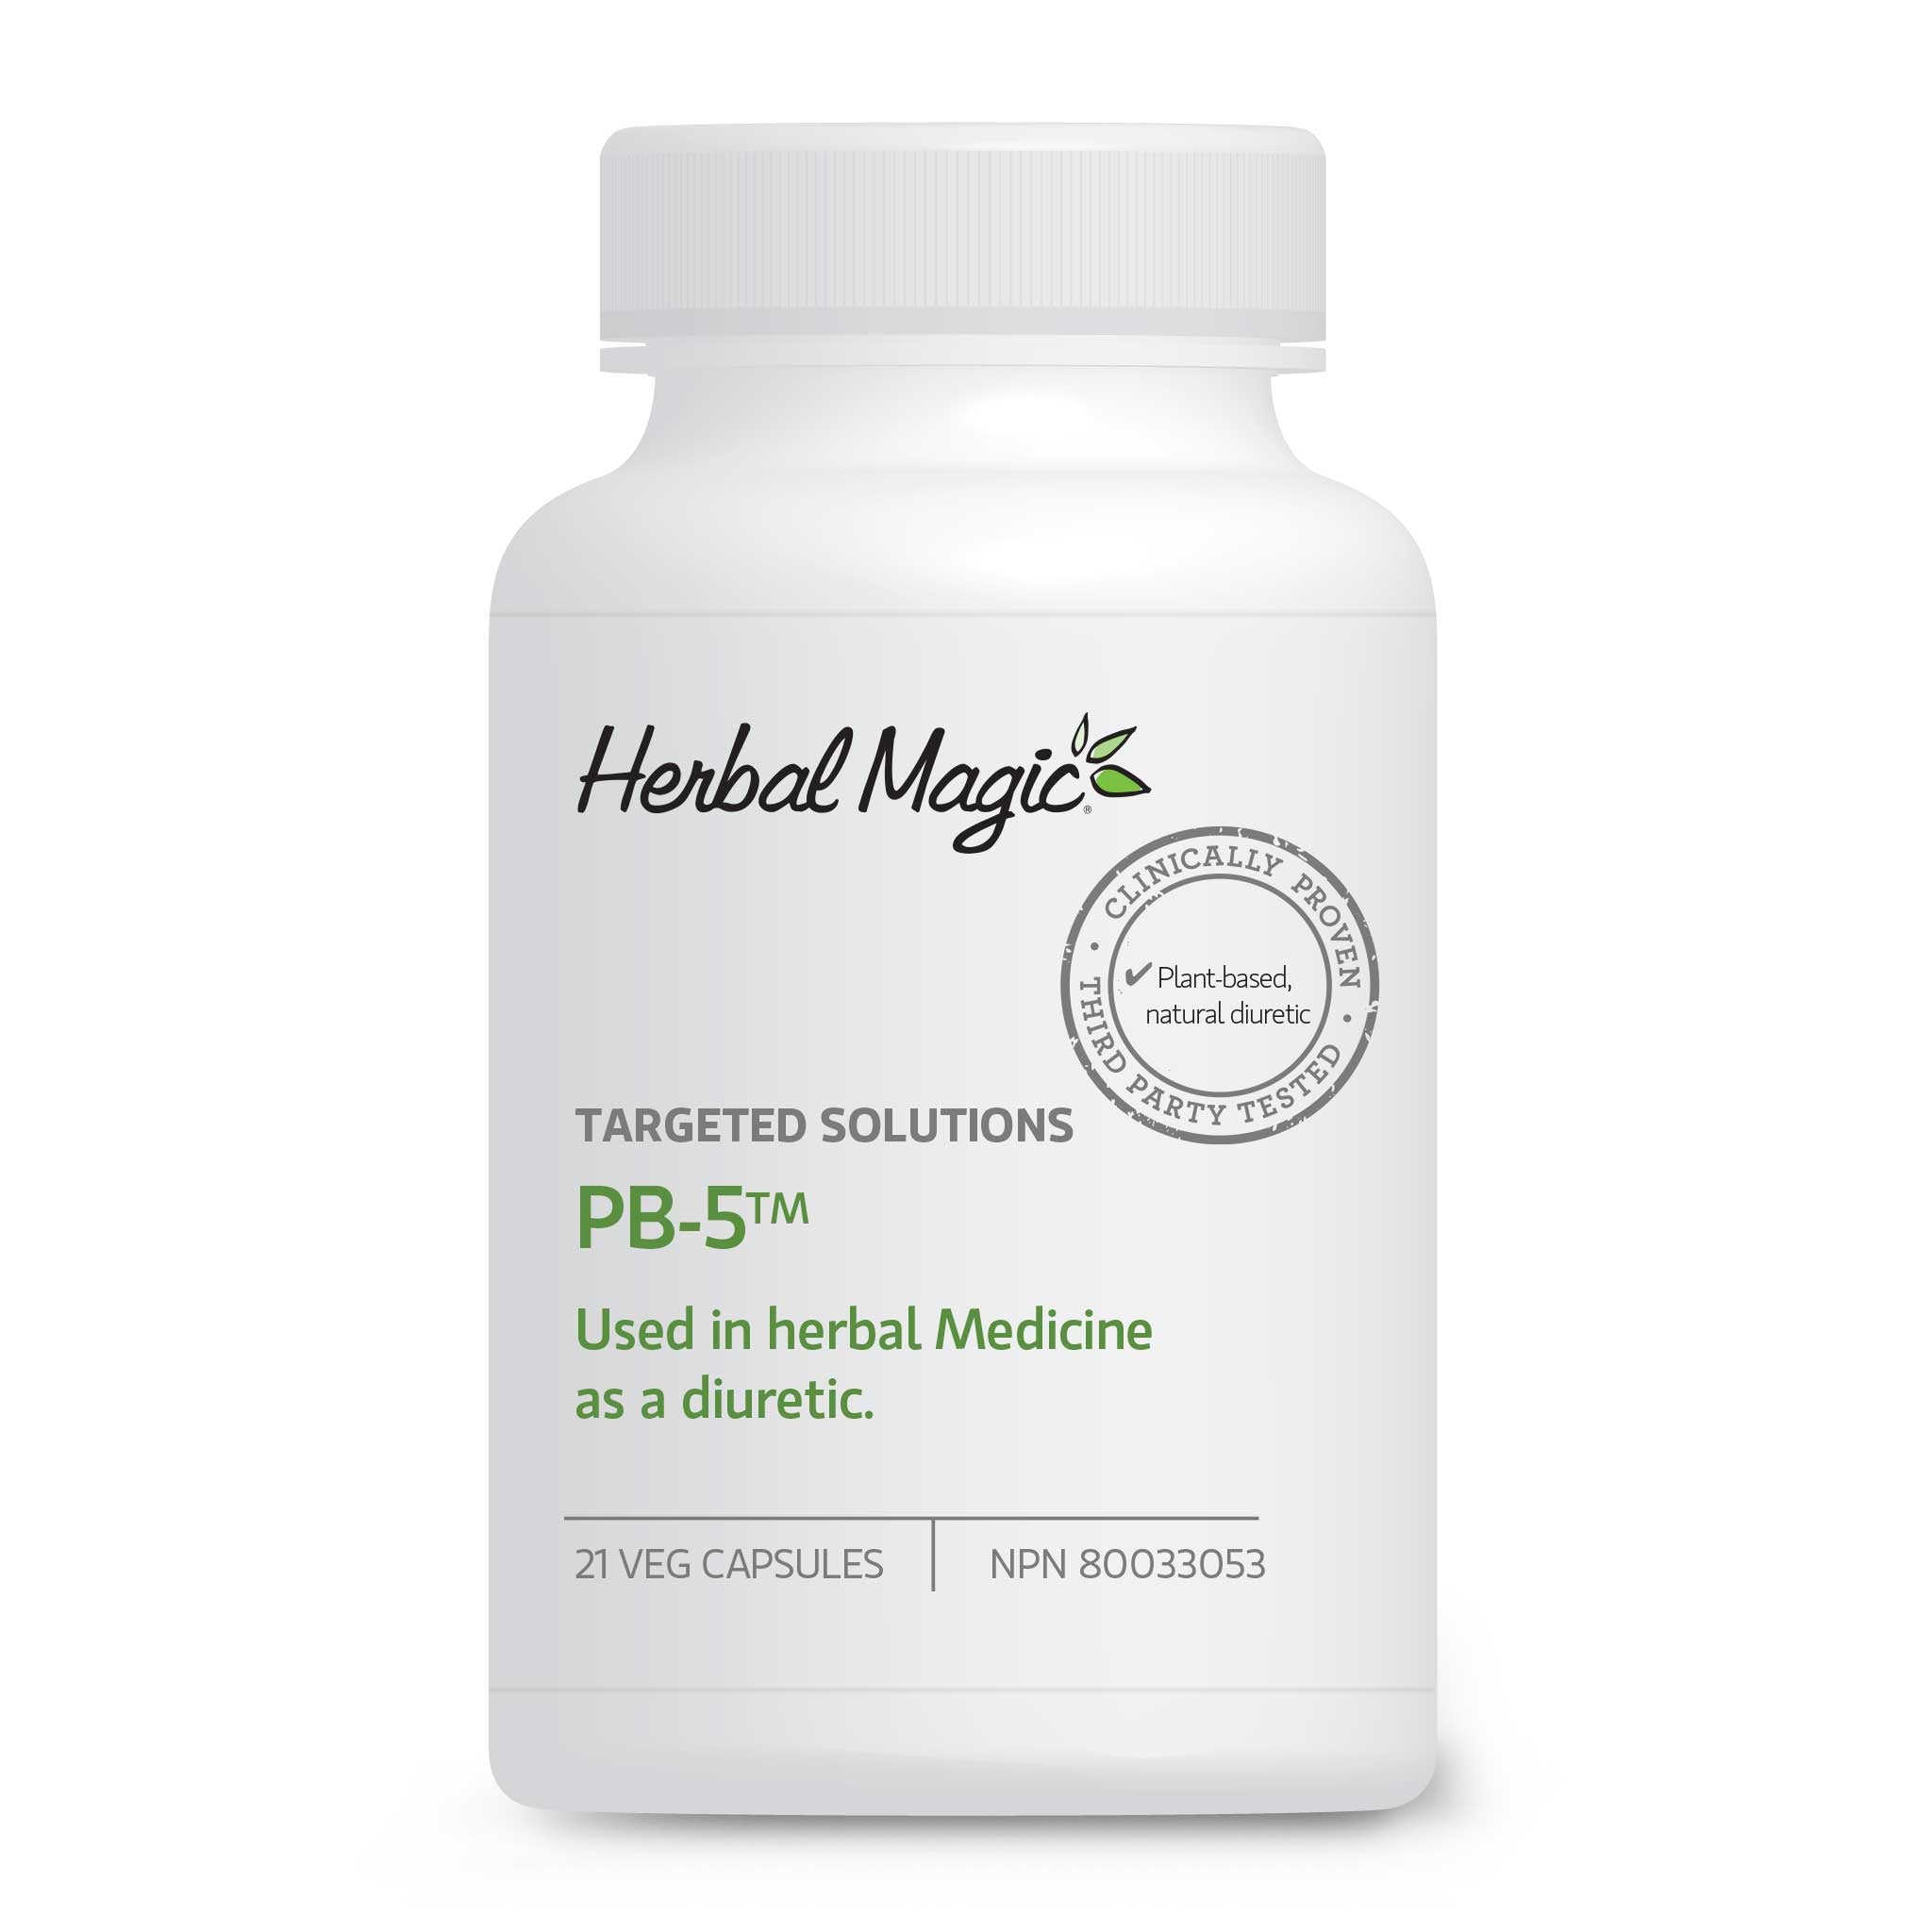 Herbal Magic PB-5 Diuretic is designed to be a "Bloat Blocker" 